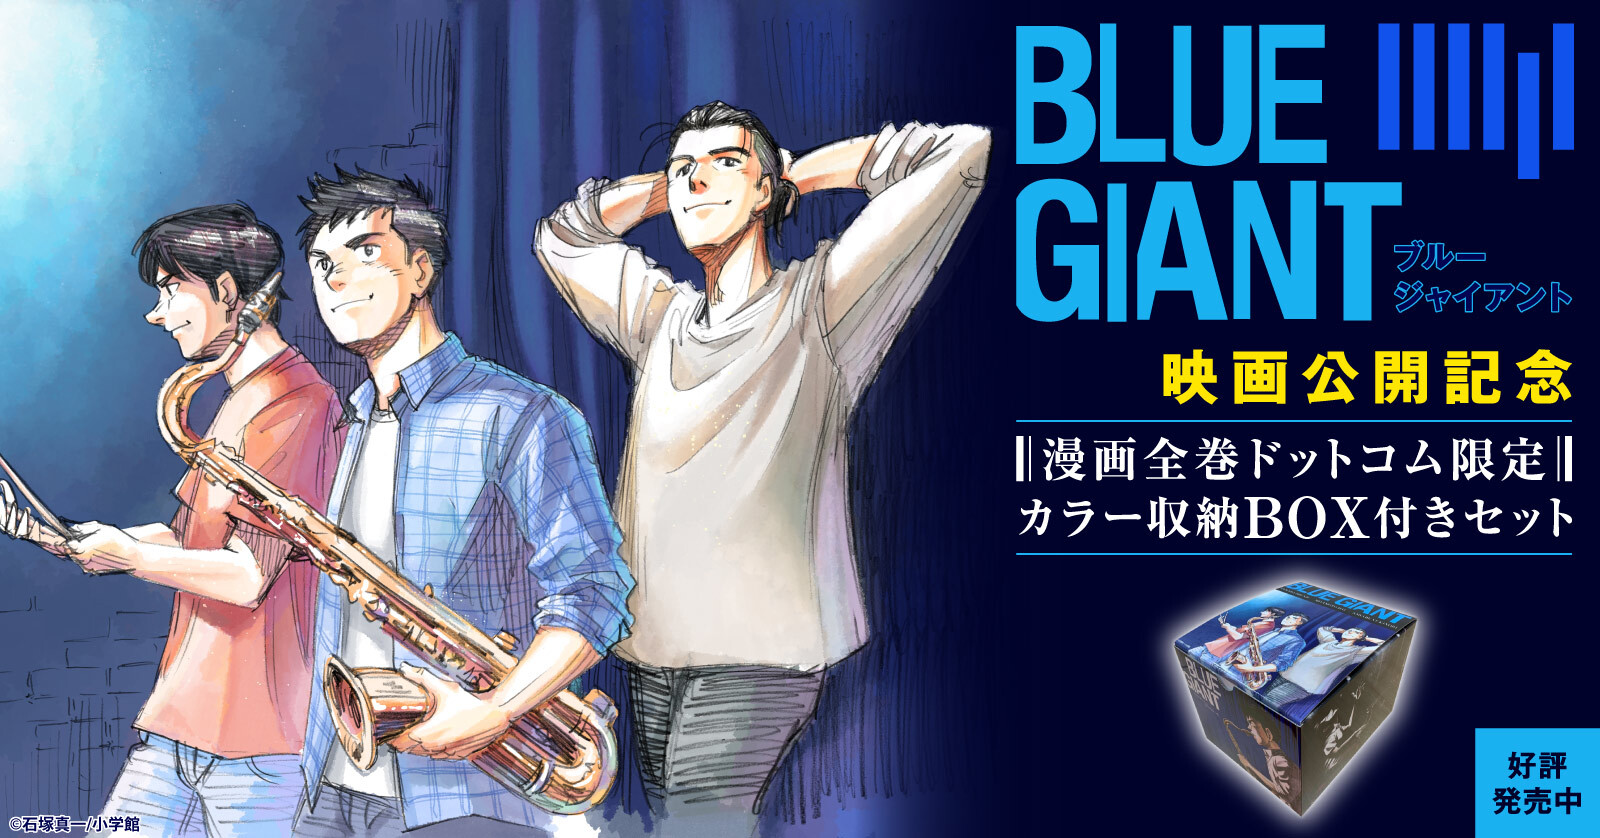 ブルージャイアント BLUE GIANTシリーズ (全31冊) +オリジナル収納BOX 